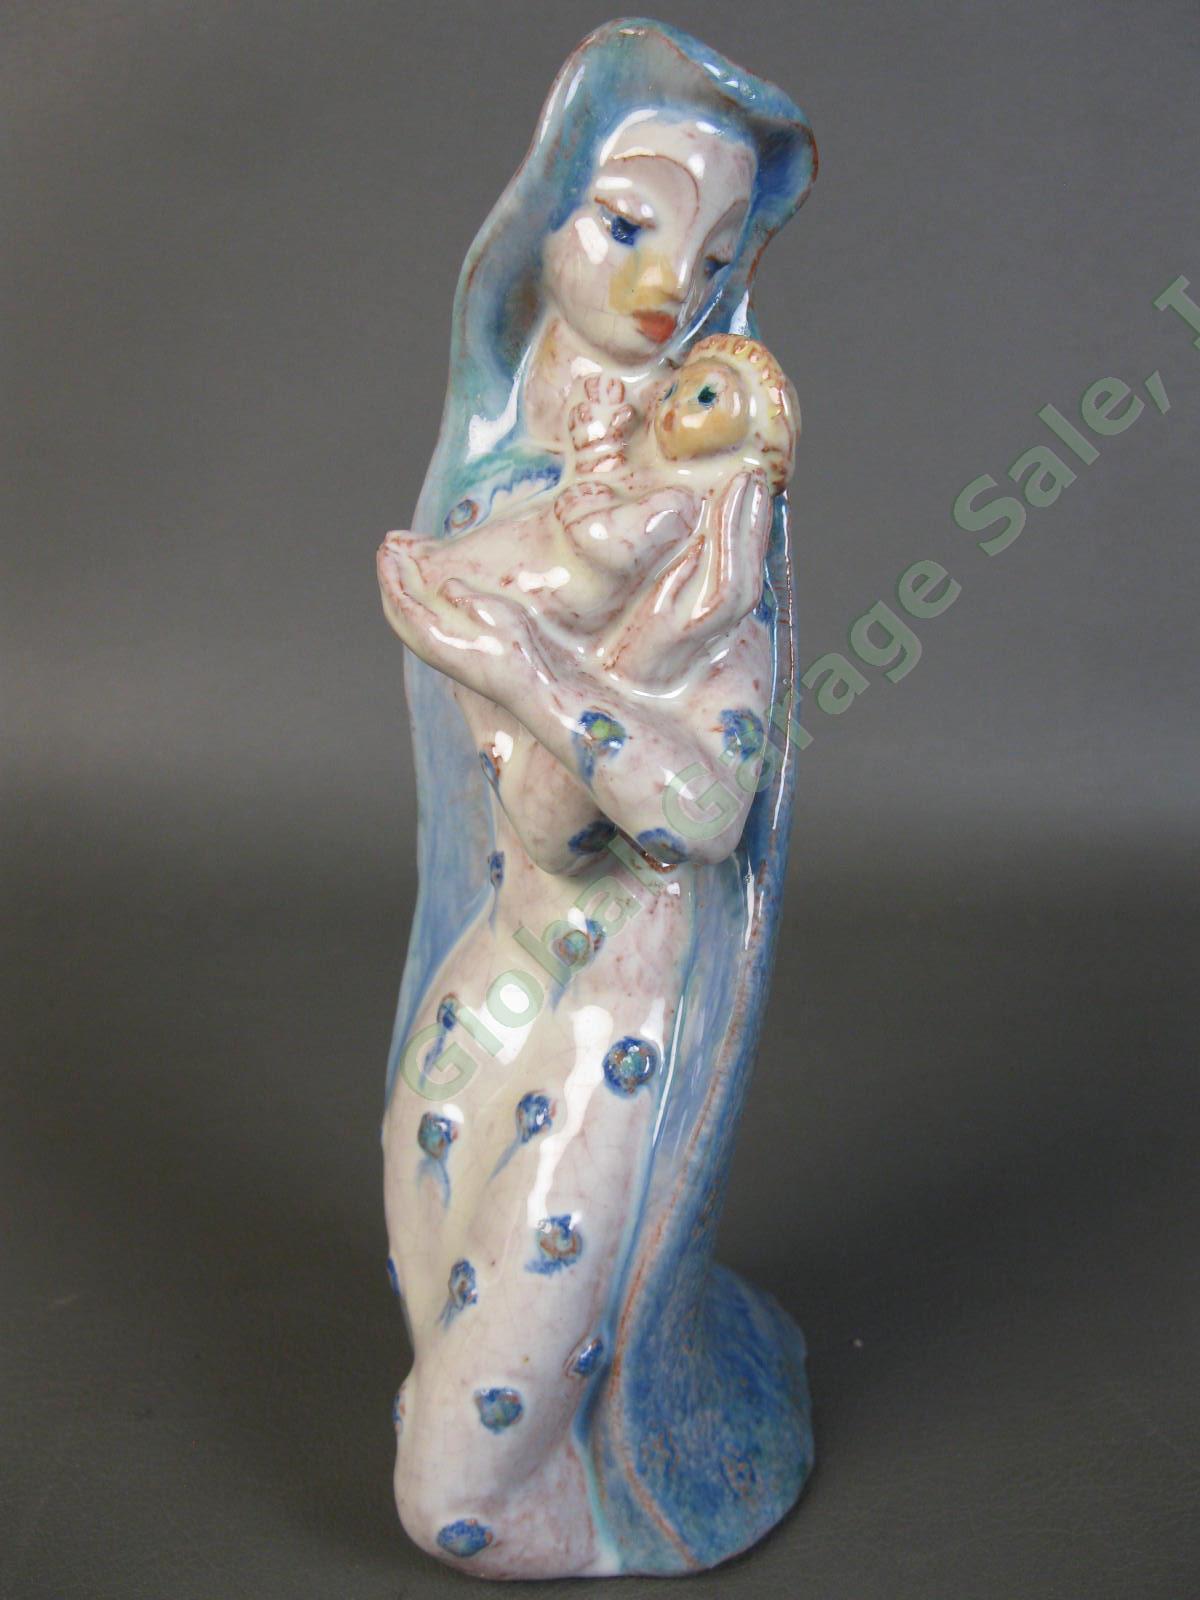 RARE 1942 Edris Eckhardt Sculpture Madonna and Child Ceramic Glaze WPA Ceveland